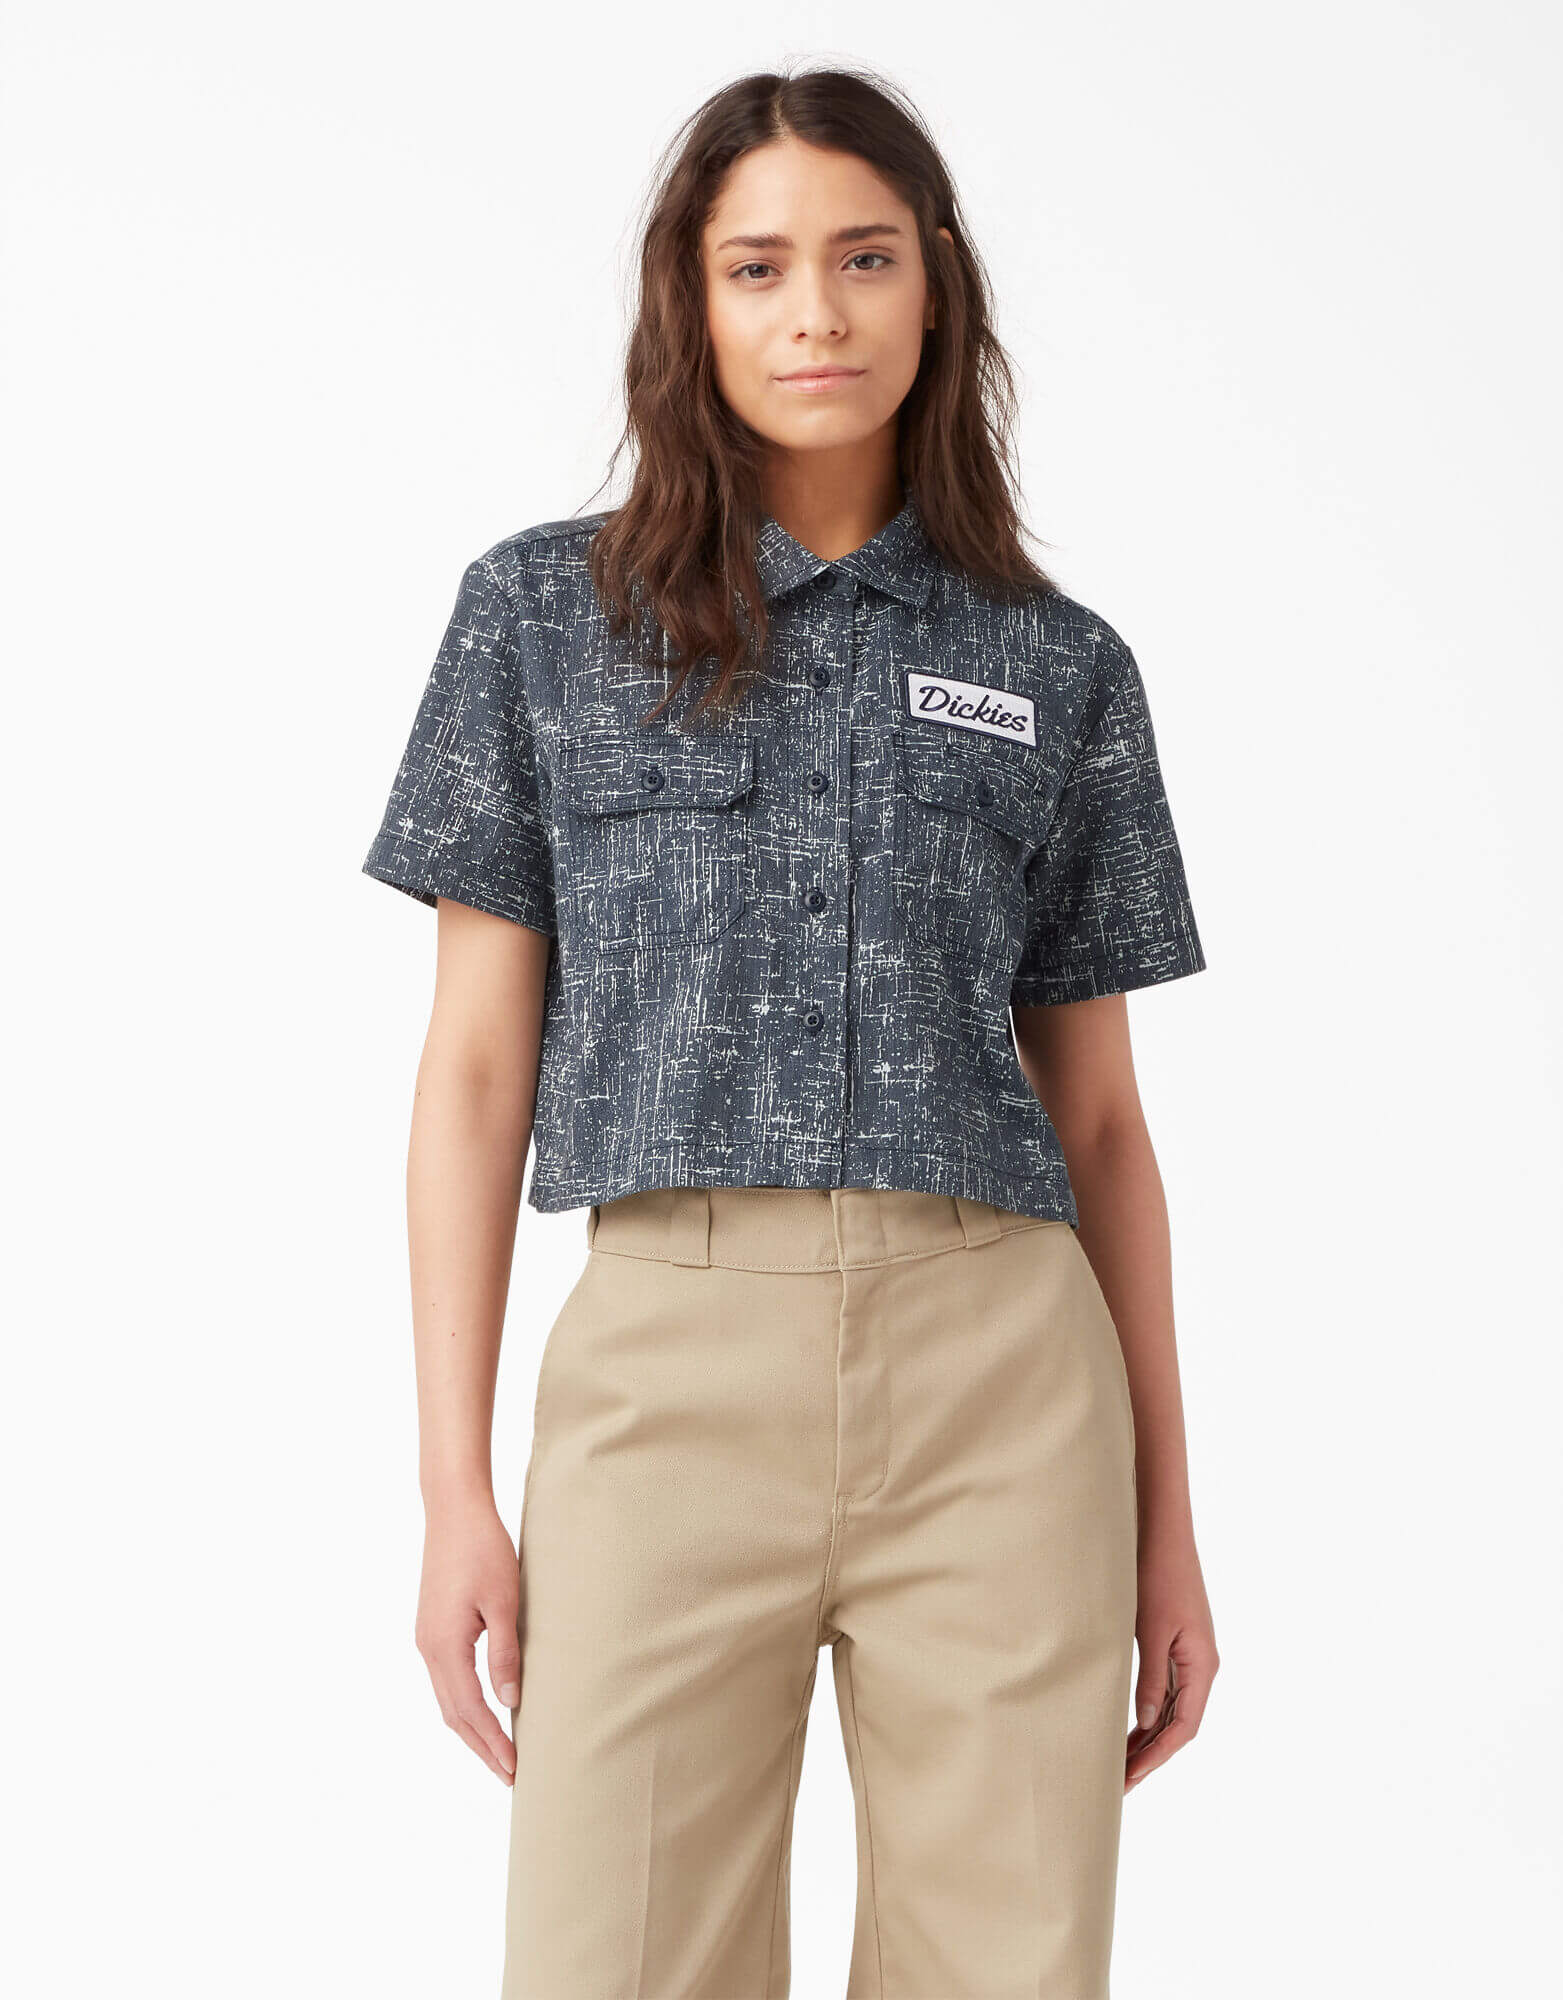 Women's Cropped Short Sleeve Work Shirt